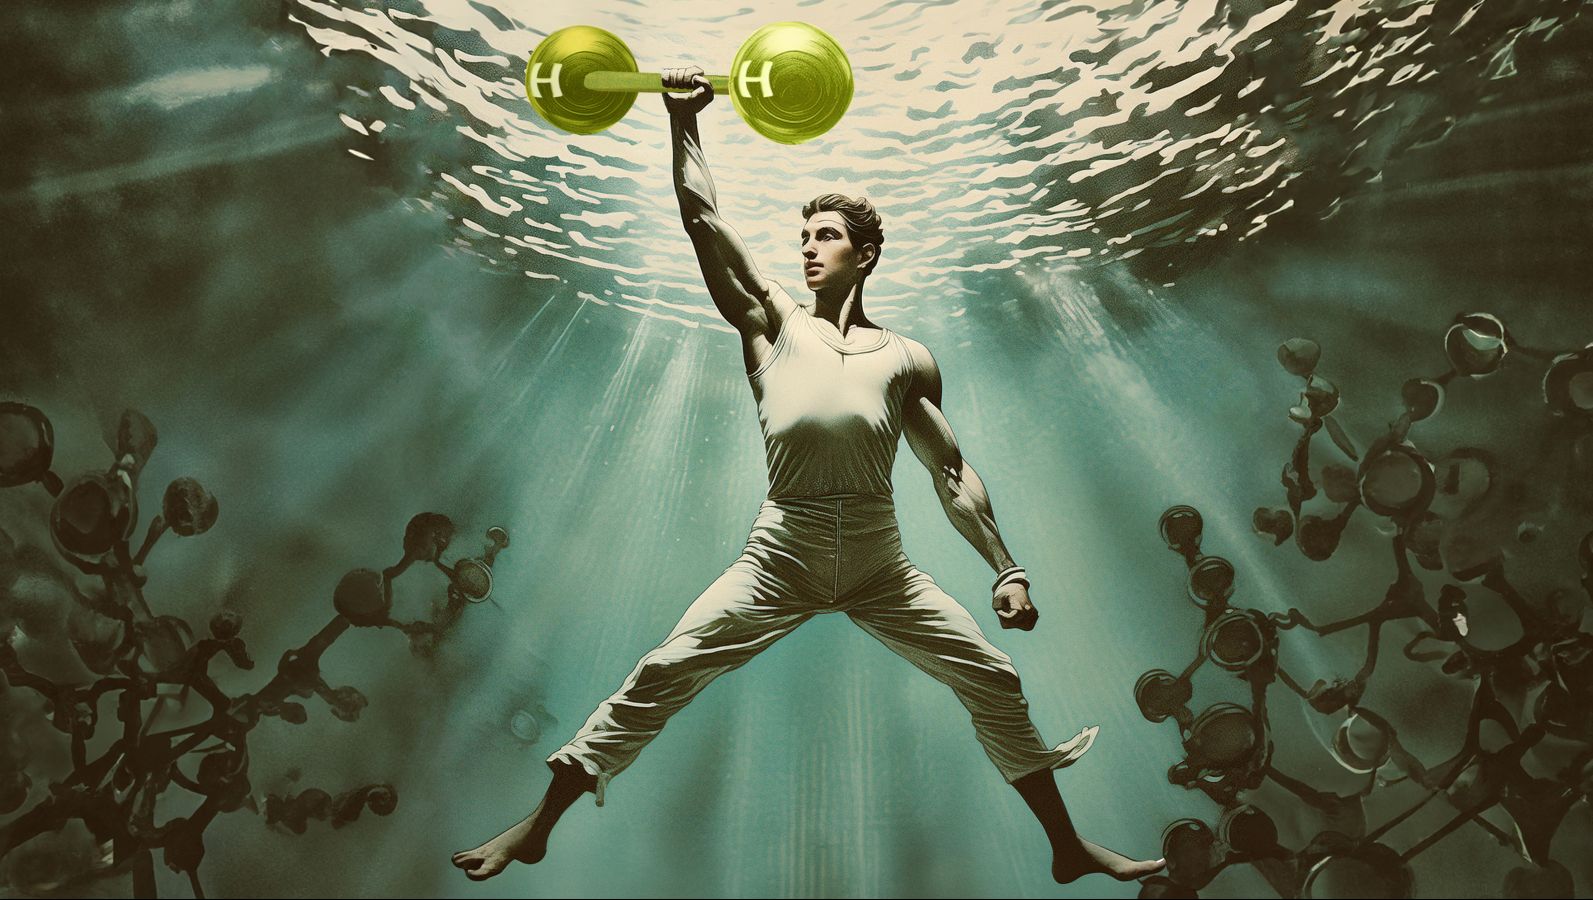 Die Grafik zeigt einen Aquaman, der statt einer Hantel ein H2-Molekül in der Hand hält. Um ihn herum Wasser und Algen, die ebenfalls aussehen wie Moleküle.